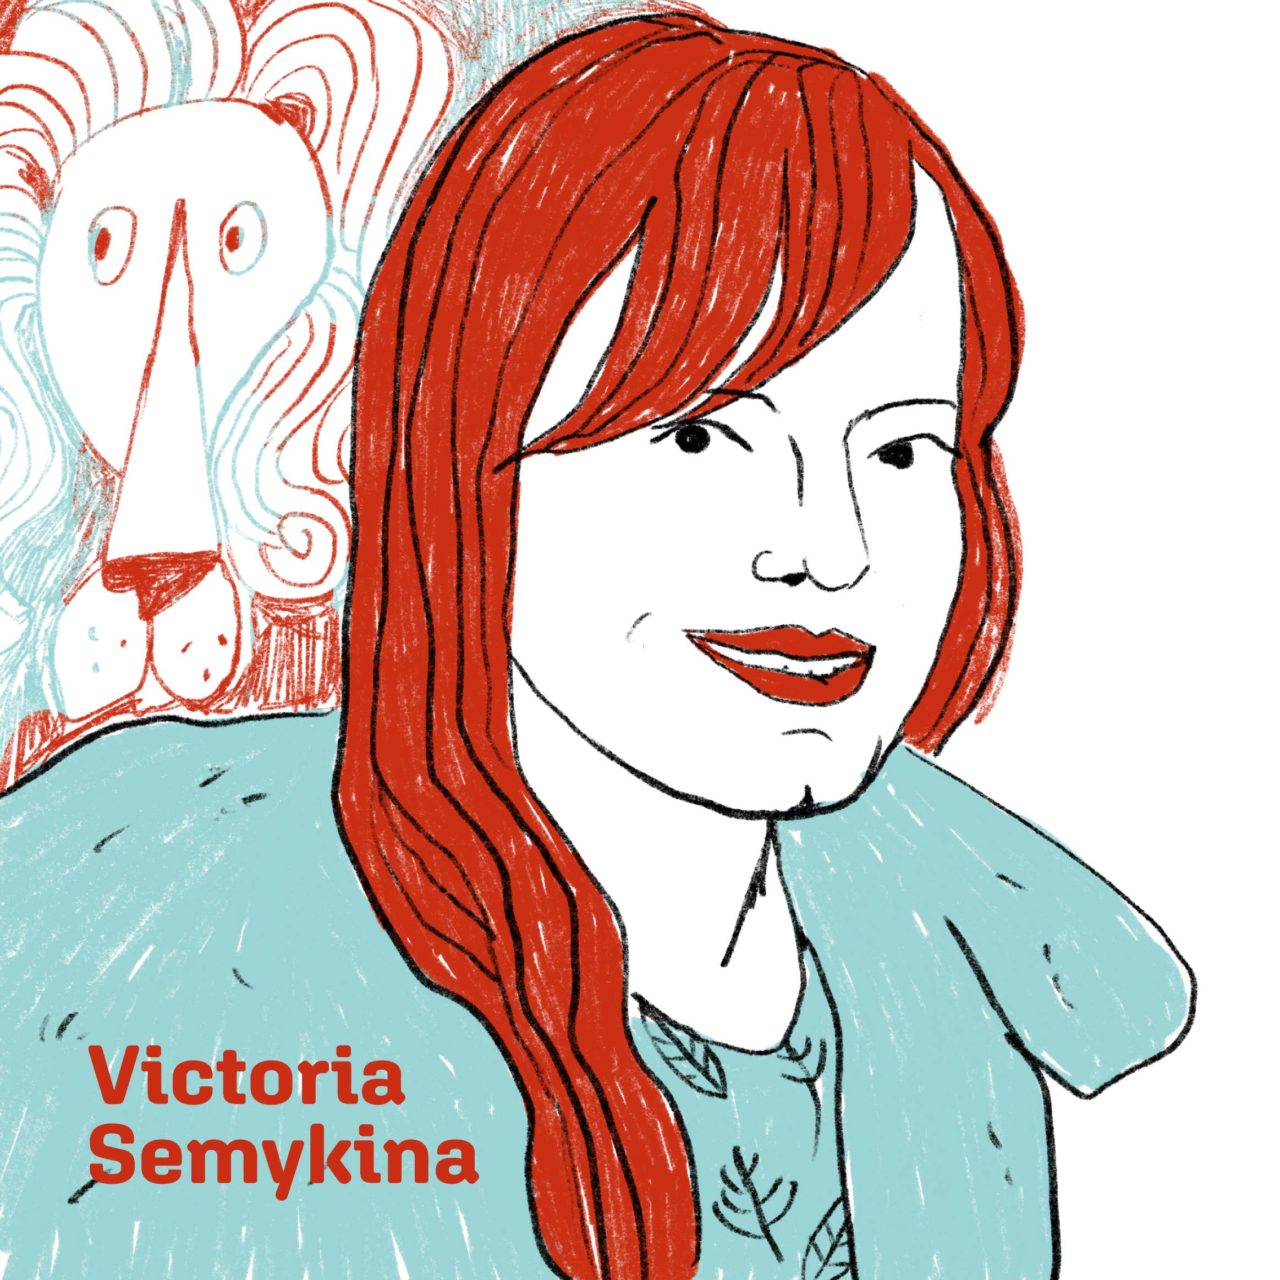 Victoria Semykina - Illustrator